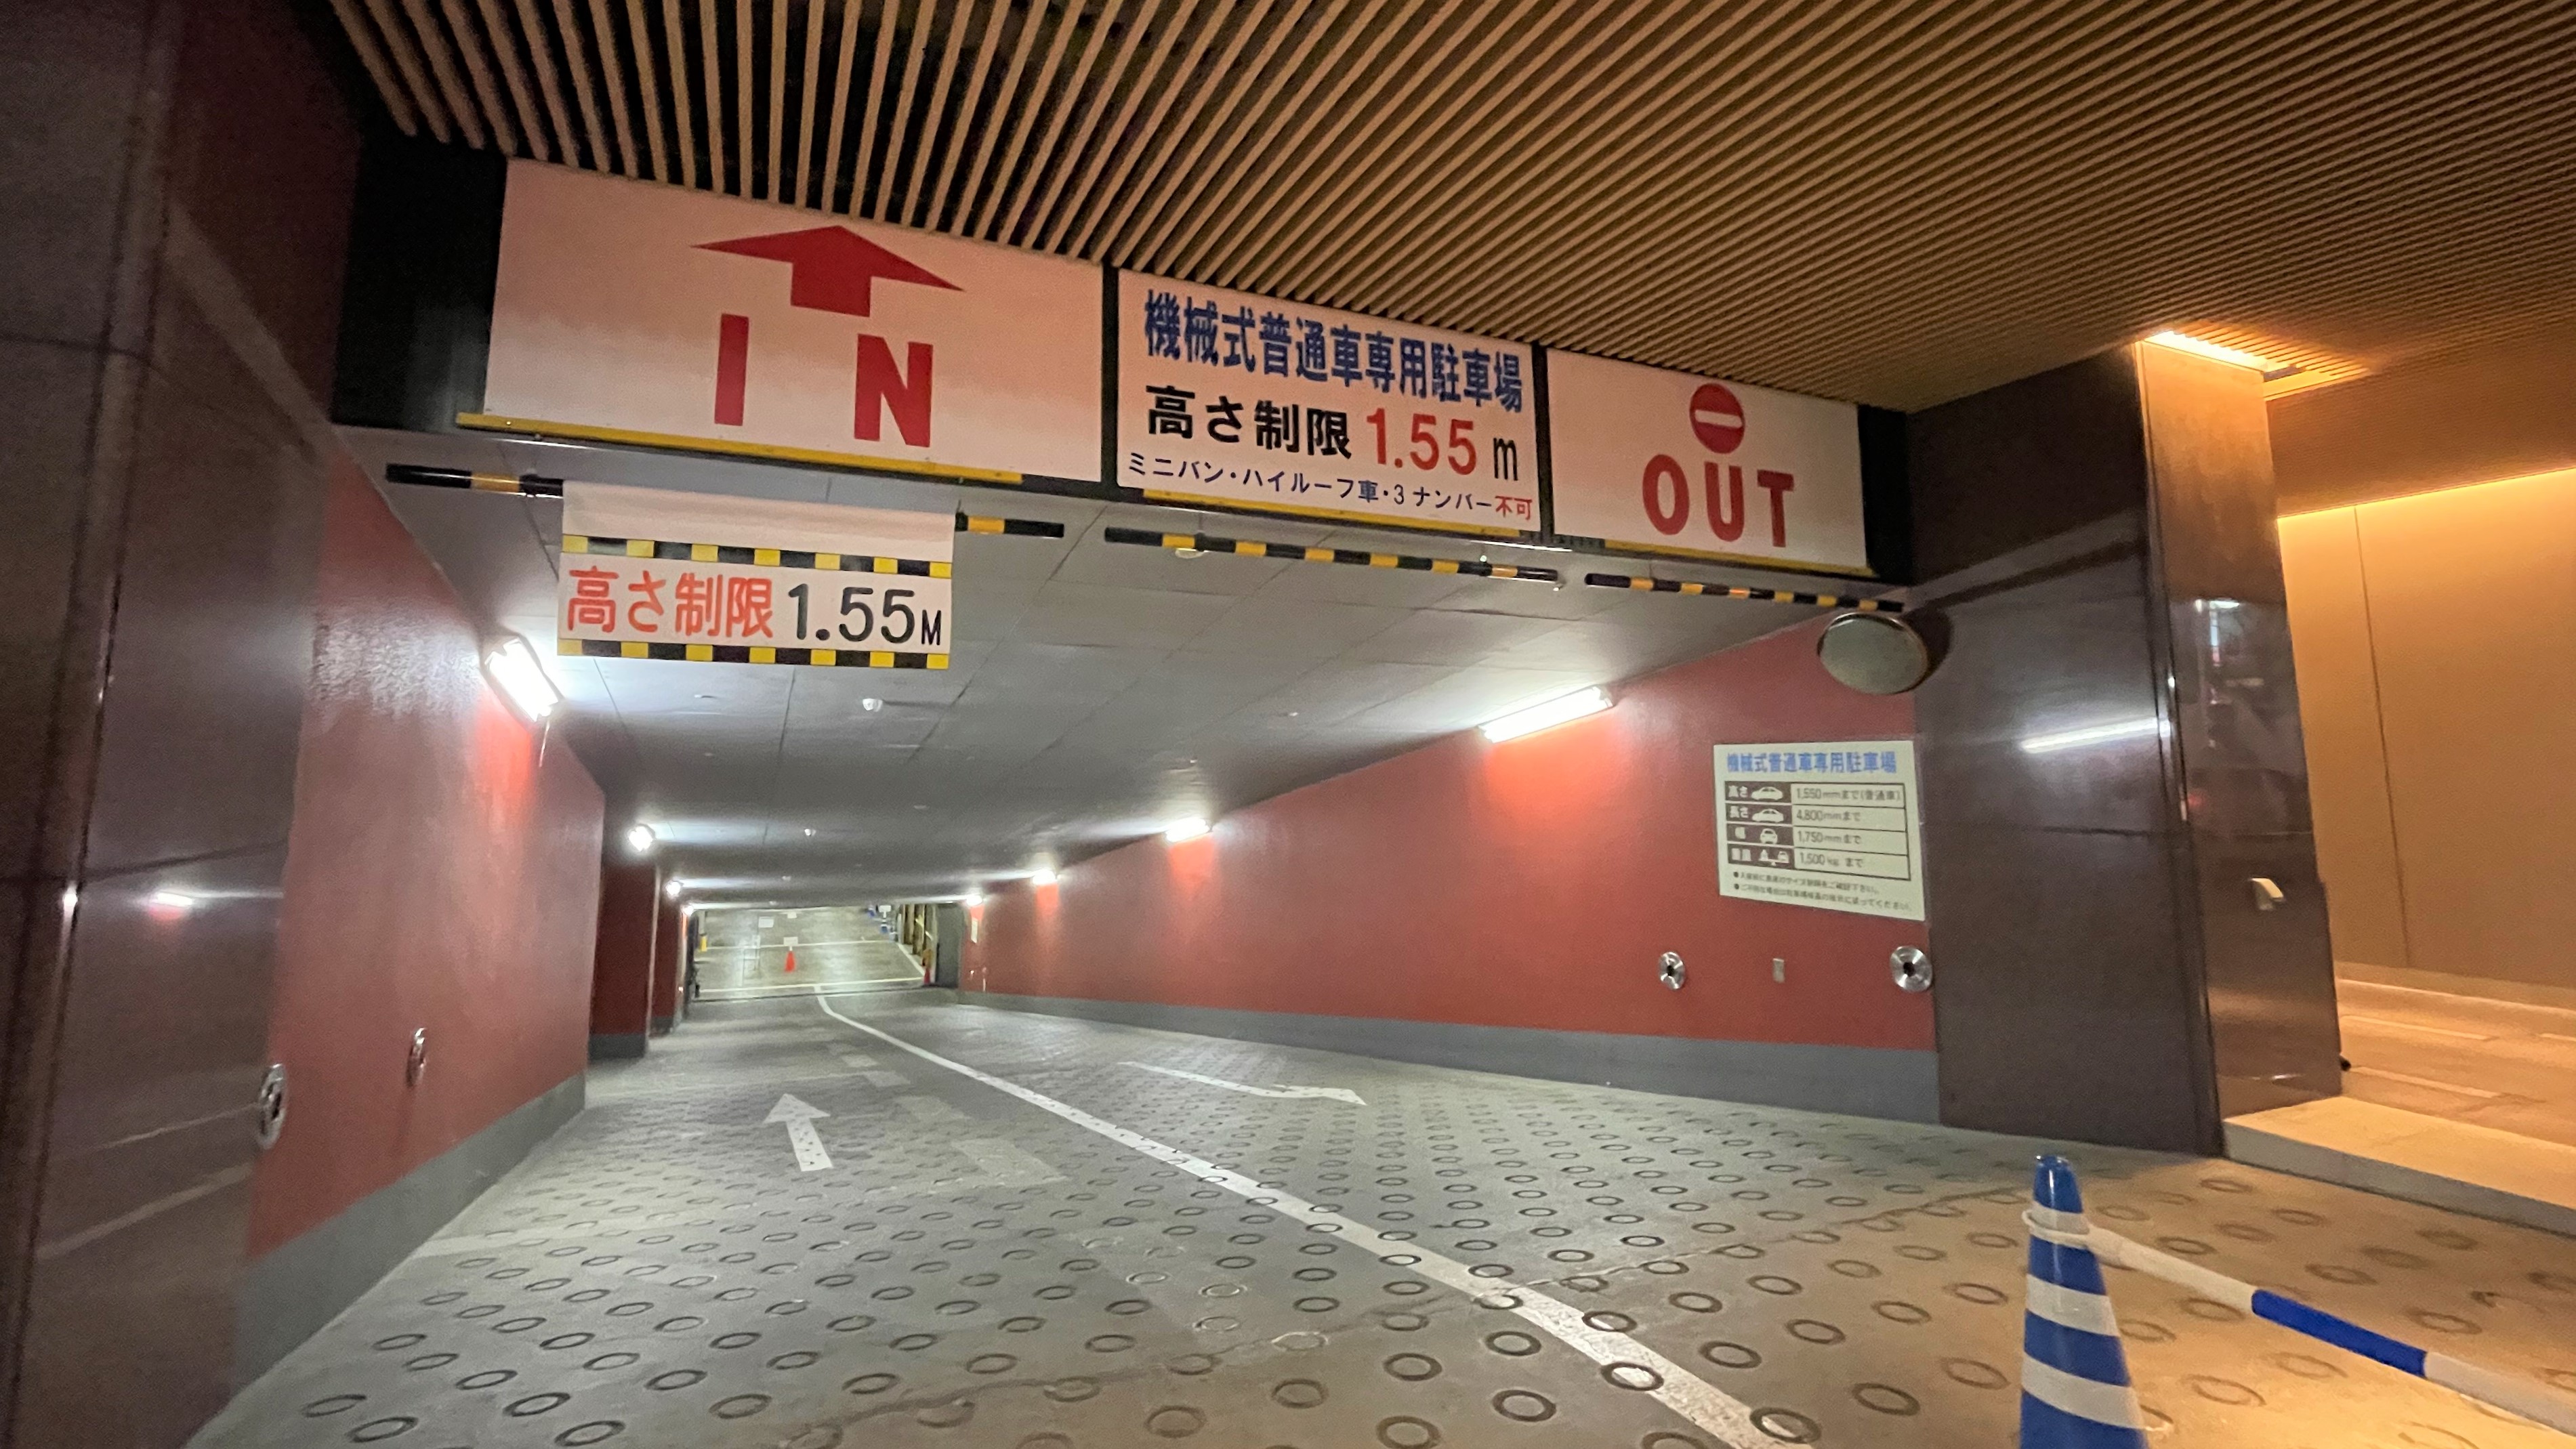 ホテル駐車場入り口は地下スロープになっております。